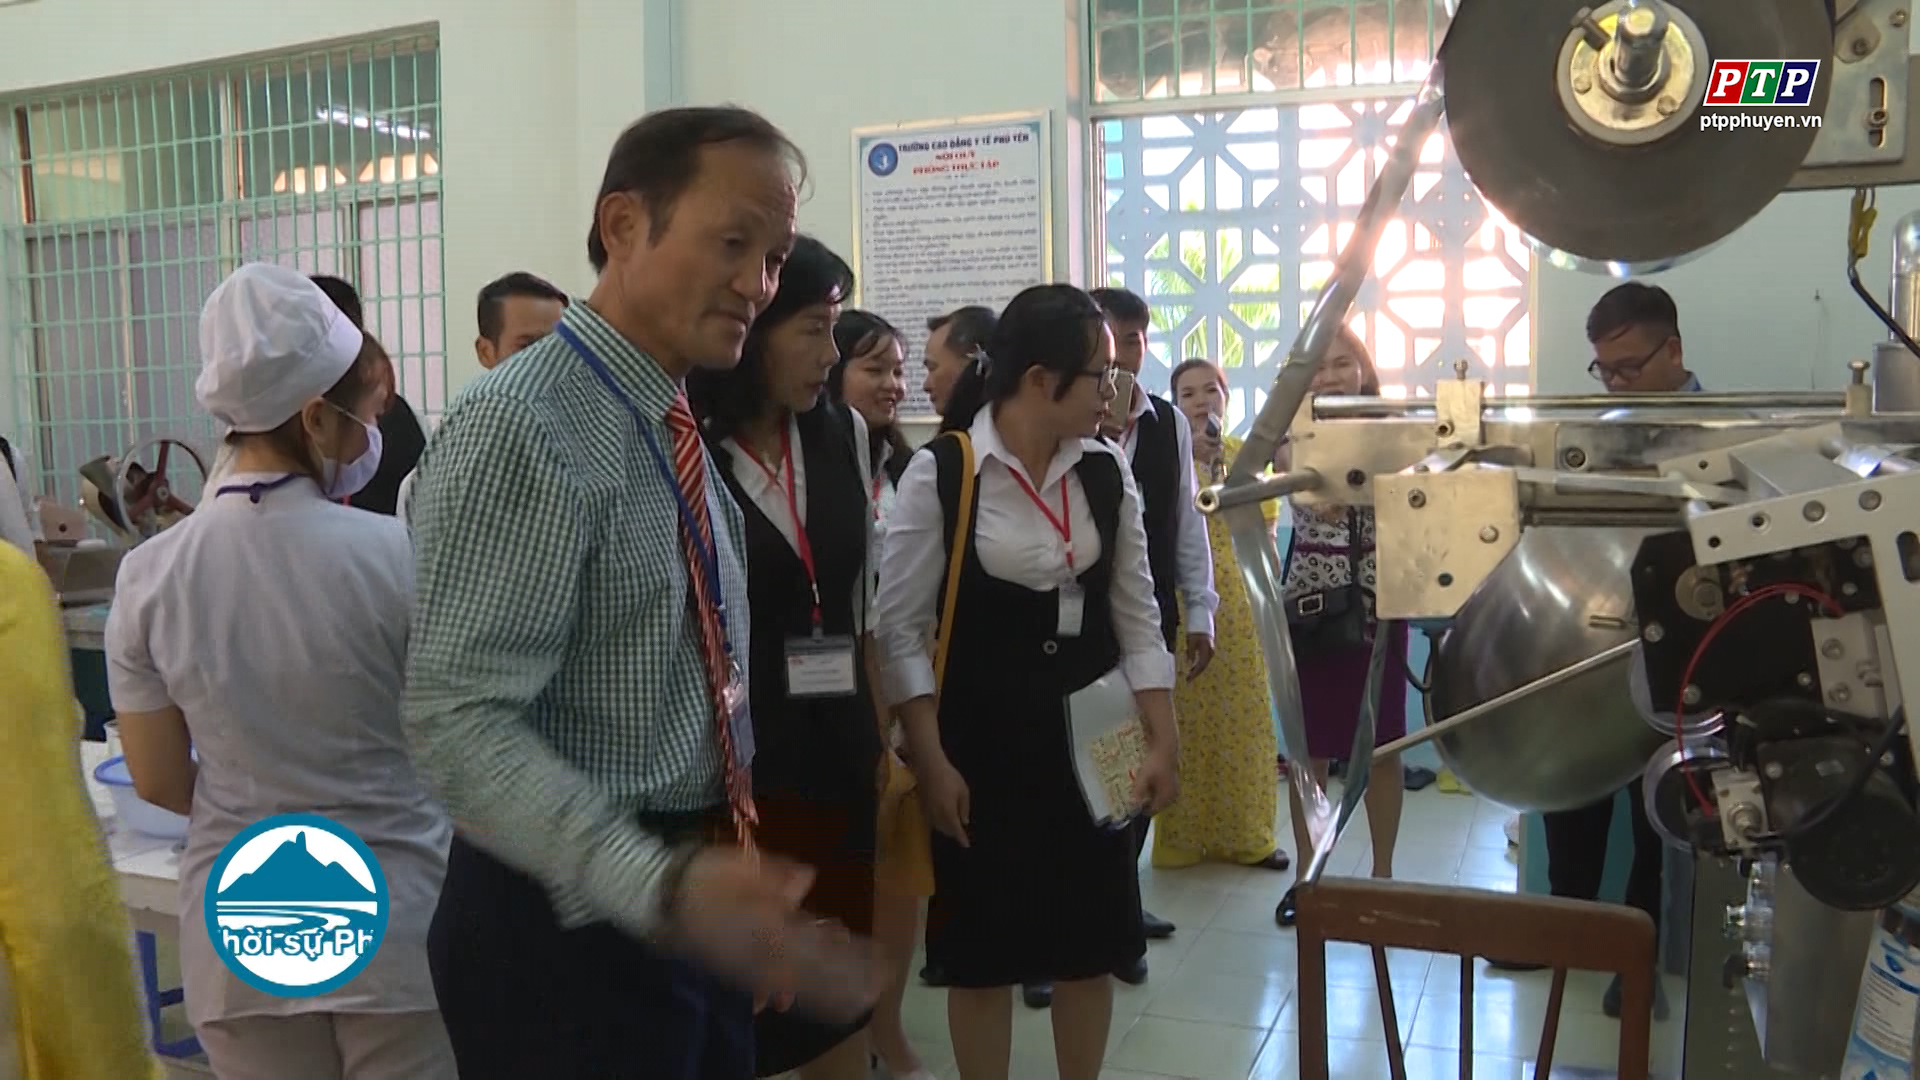 Trường CĐ Y tế Phú Yên mở lớp đào tạo liên thông hệ cao đẳng dược và điều dưỡng tại Cần Thơ